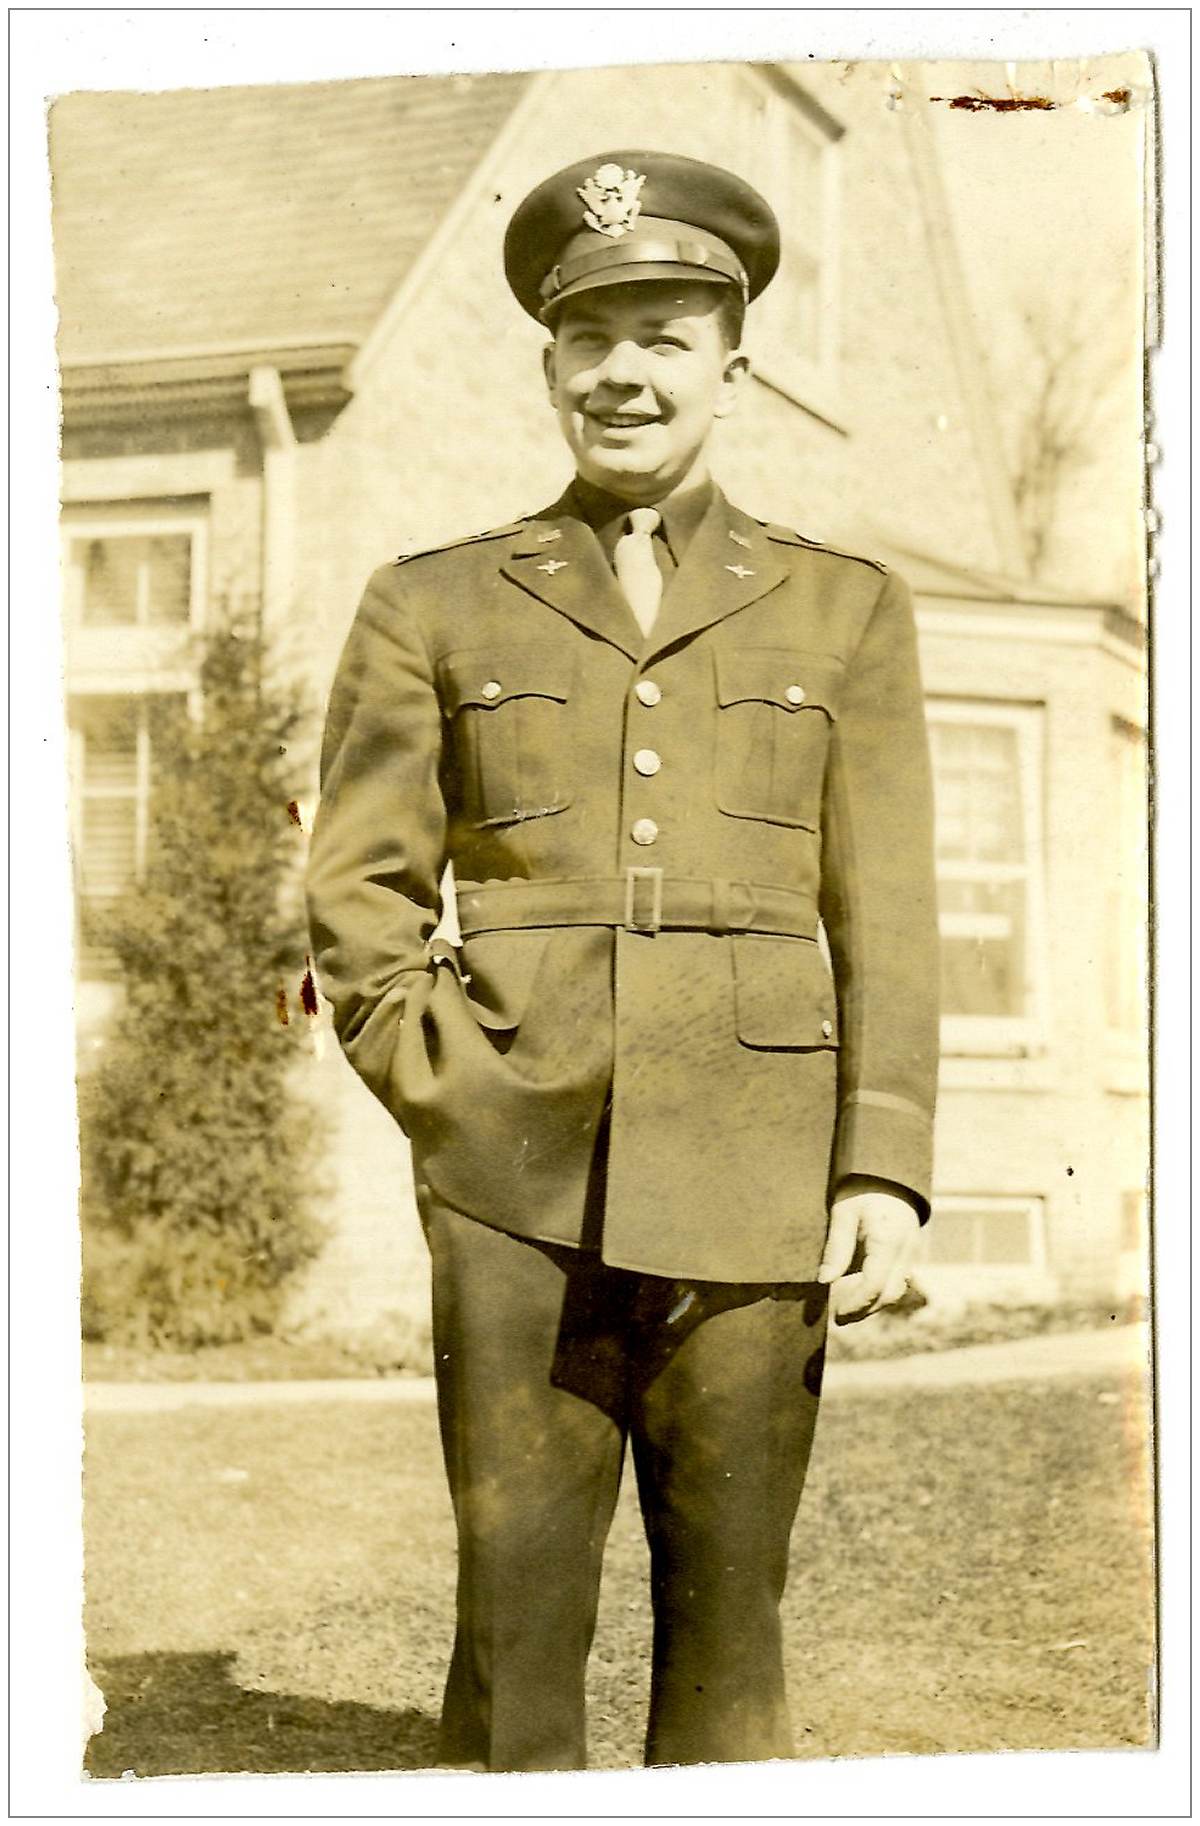 Lt. Ray Camosy - USAAF - photo via KU 1778